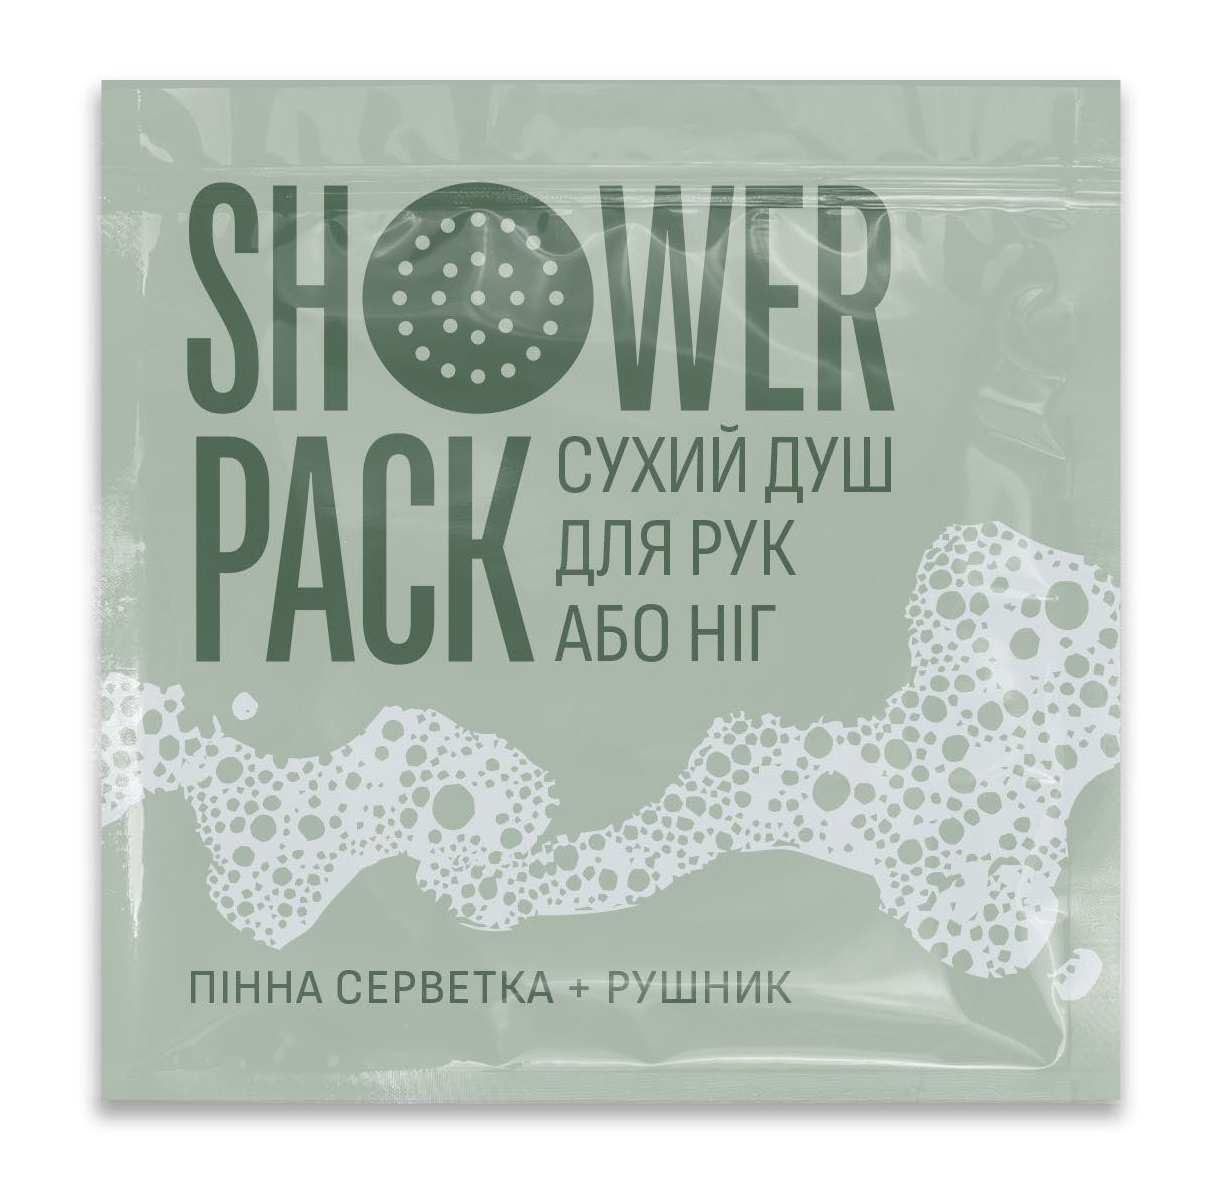 Сухий душ для рук або ніг Shower Pack